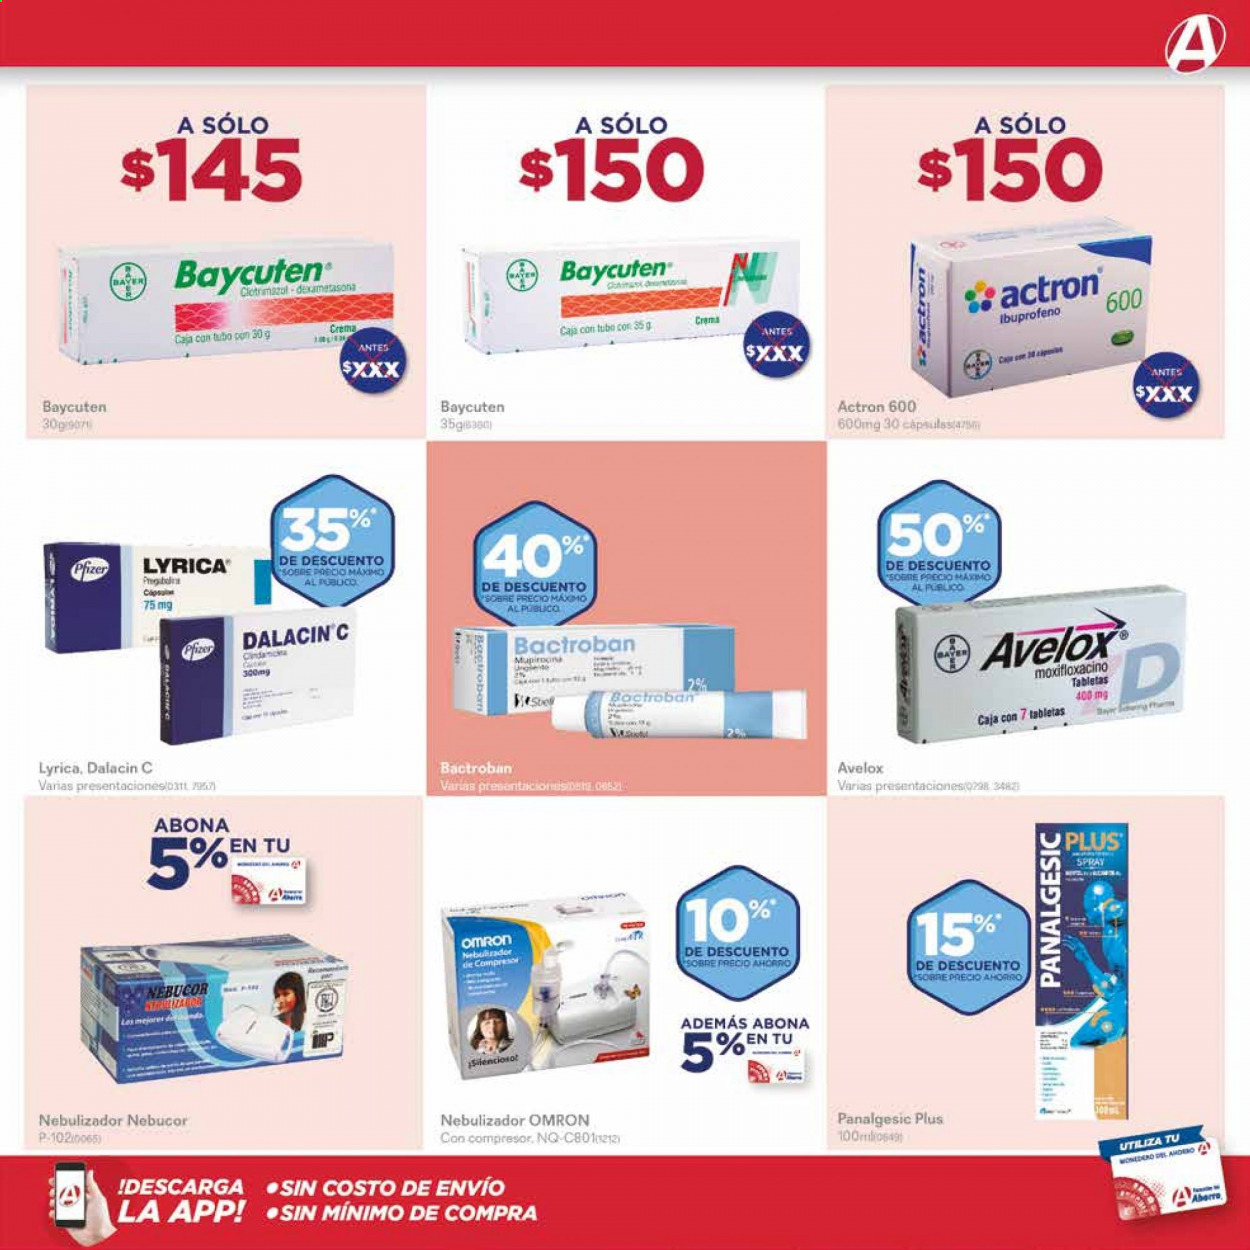 Catálogo Farmacias del Ahorro - 1.1.2021 - 31.1.2021.